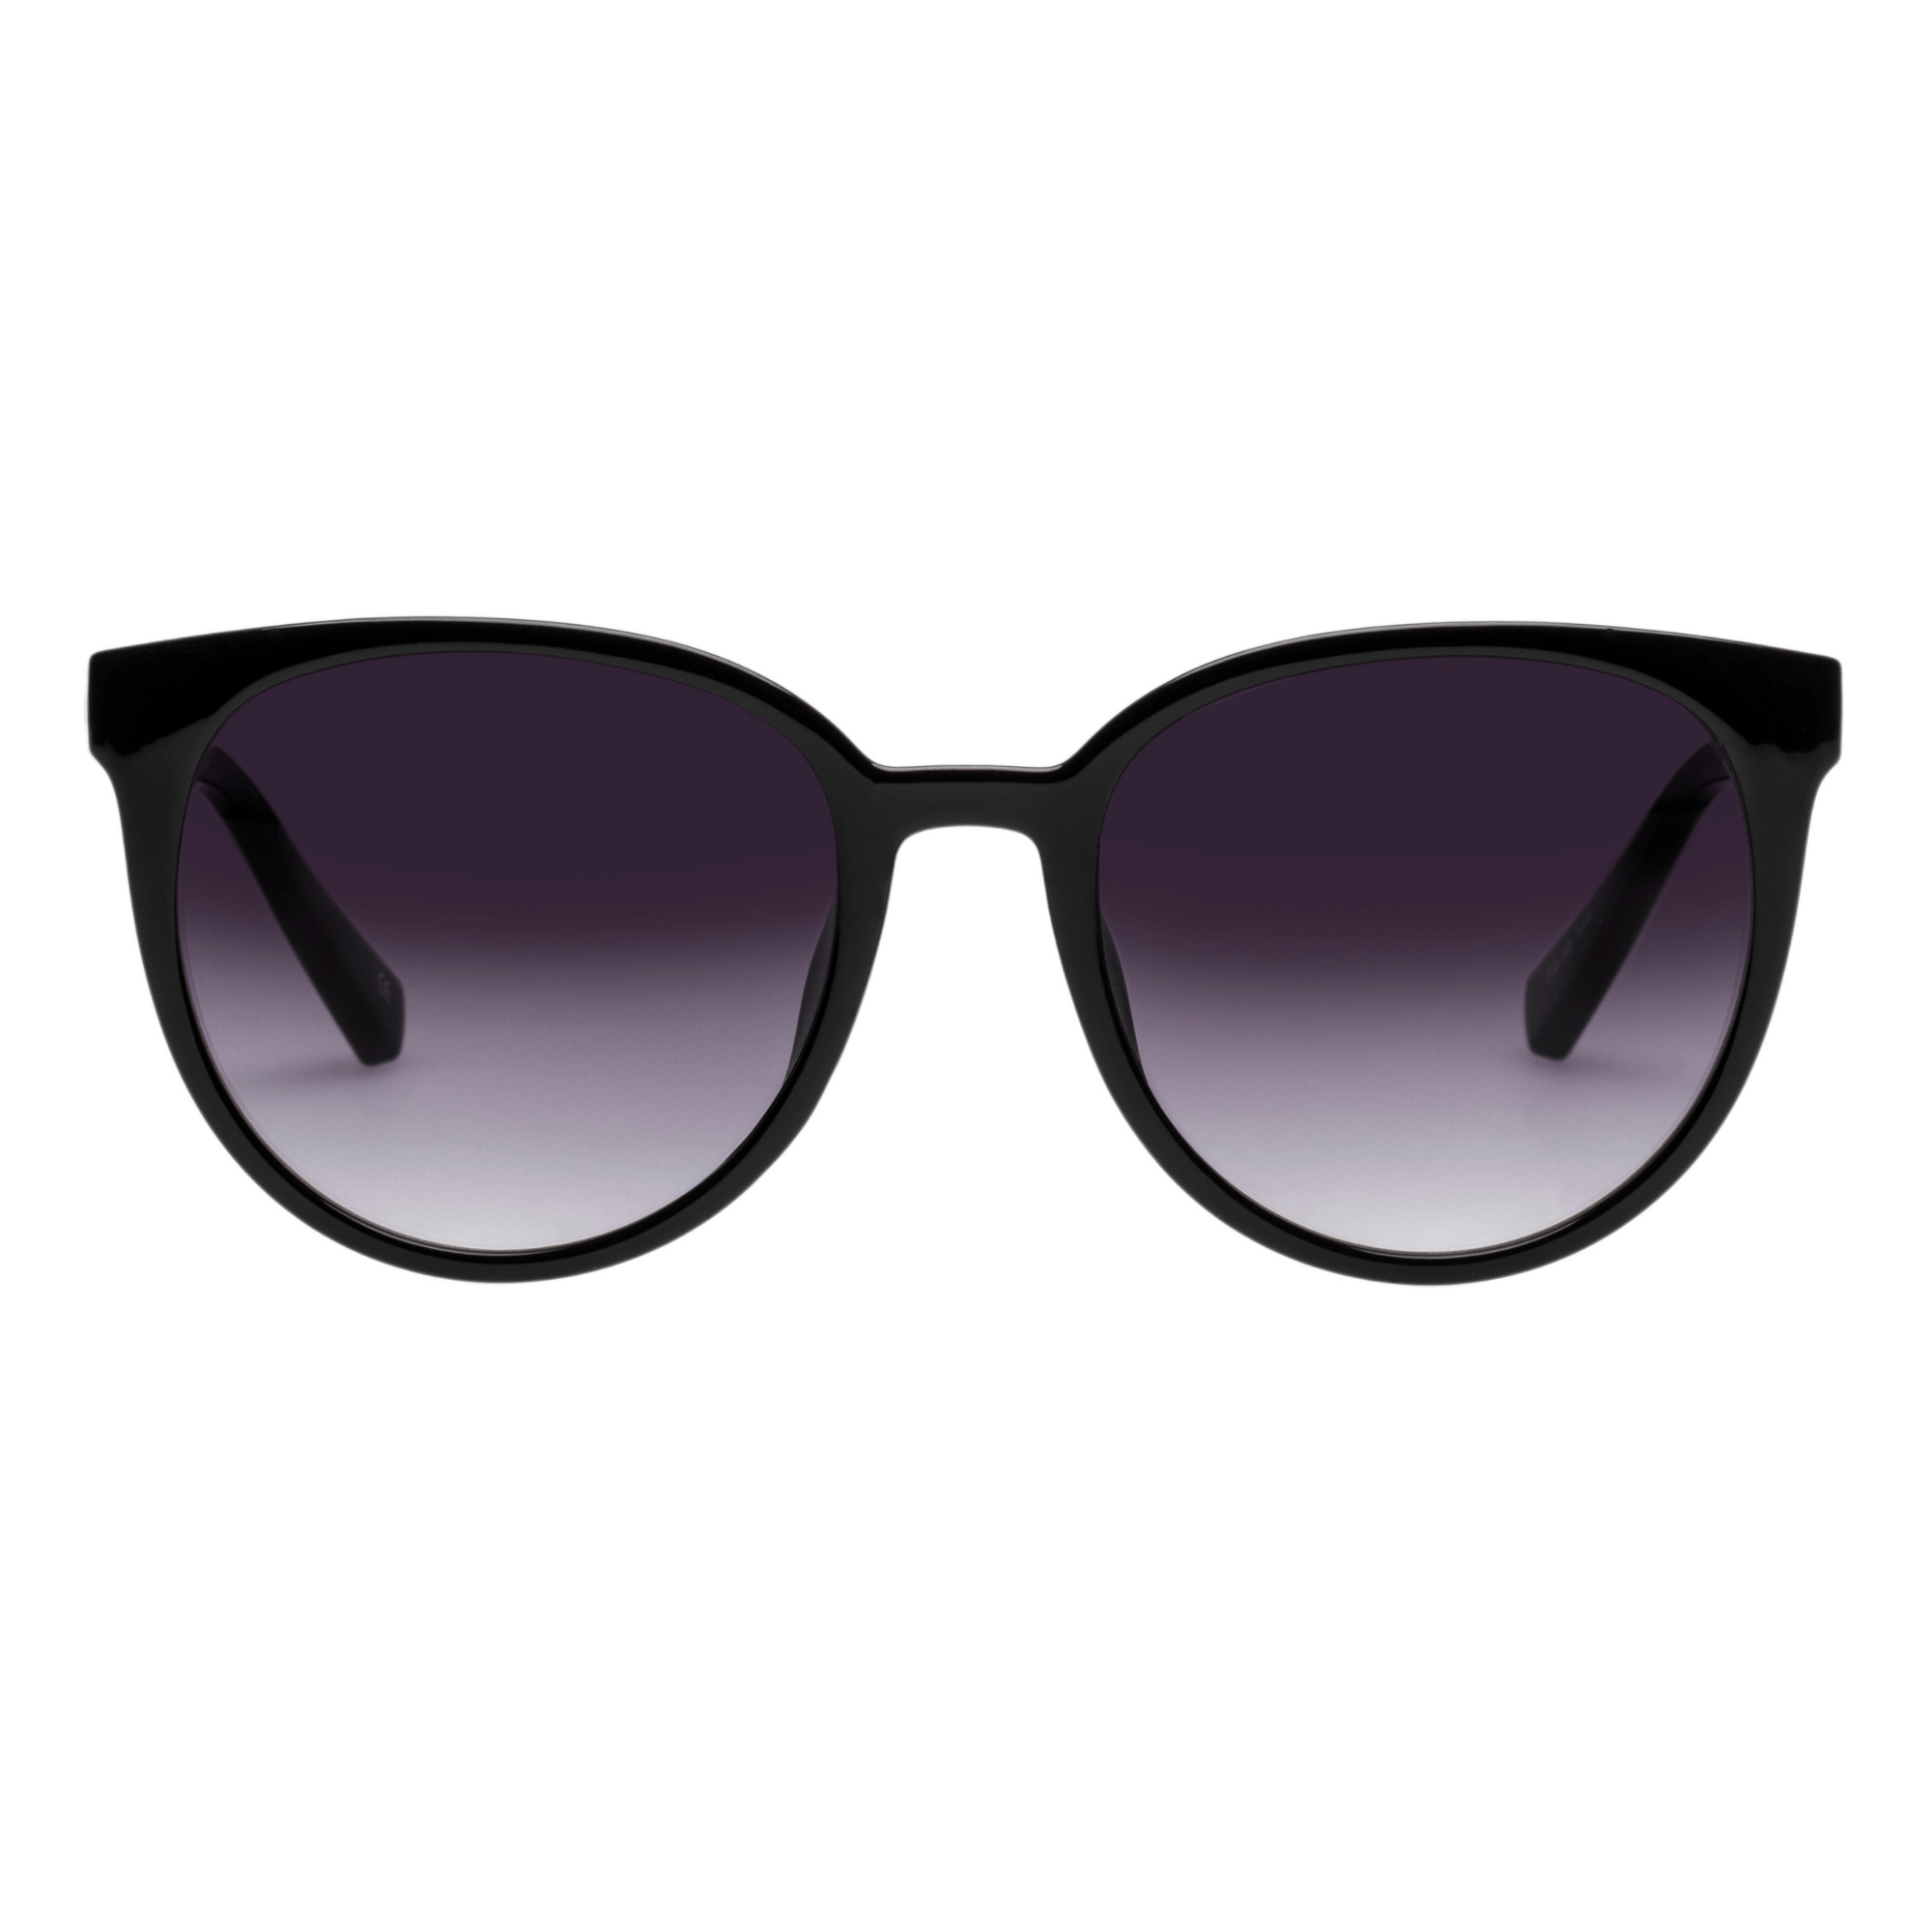 Forsøg Troubled jug Le Specs - fashion solbriller - Thisseason.dk